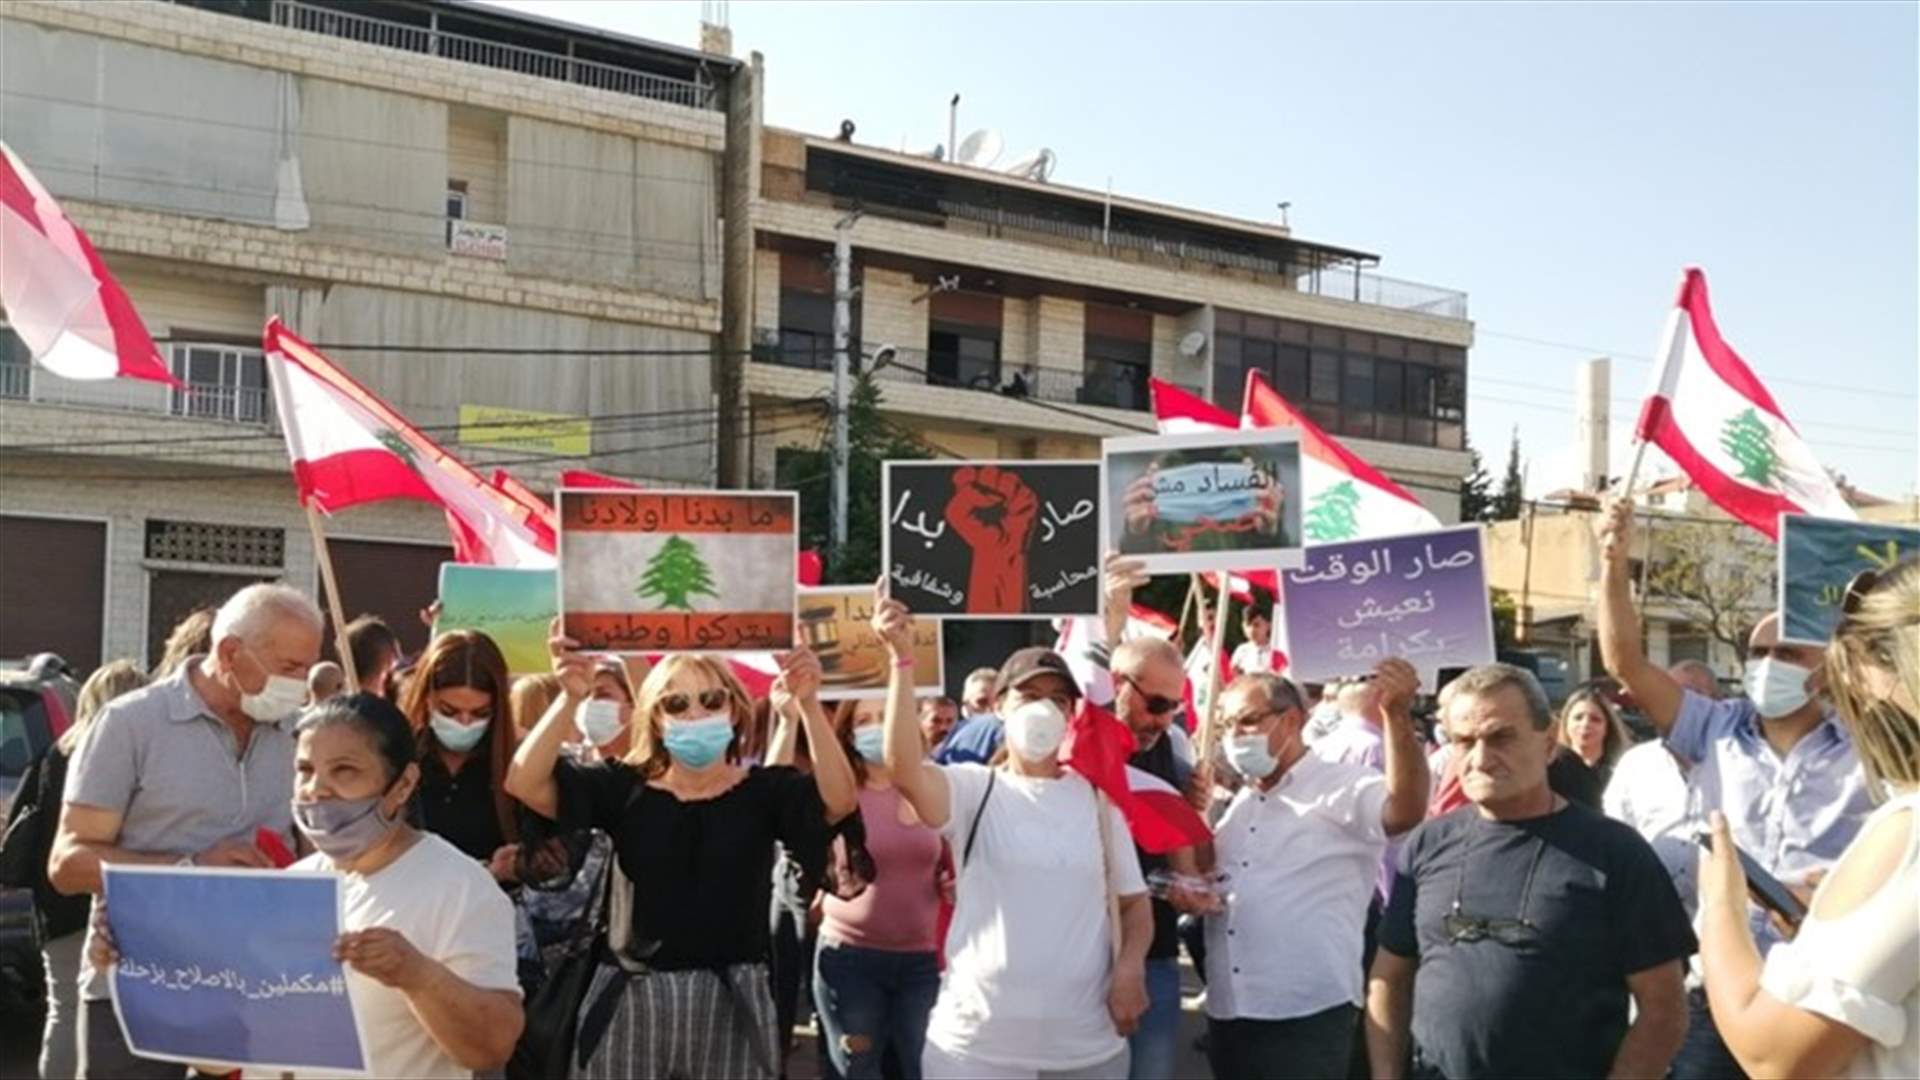 اعتصام أمام مستشفى الهراوي في زحلة احتجاجا على شبهات فساد حول صفقة معدات طبية في المستشفى